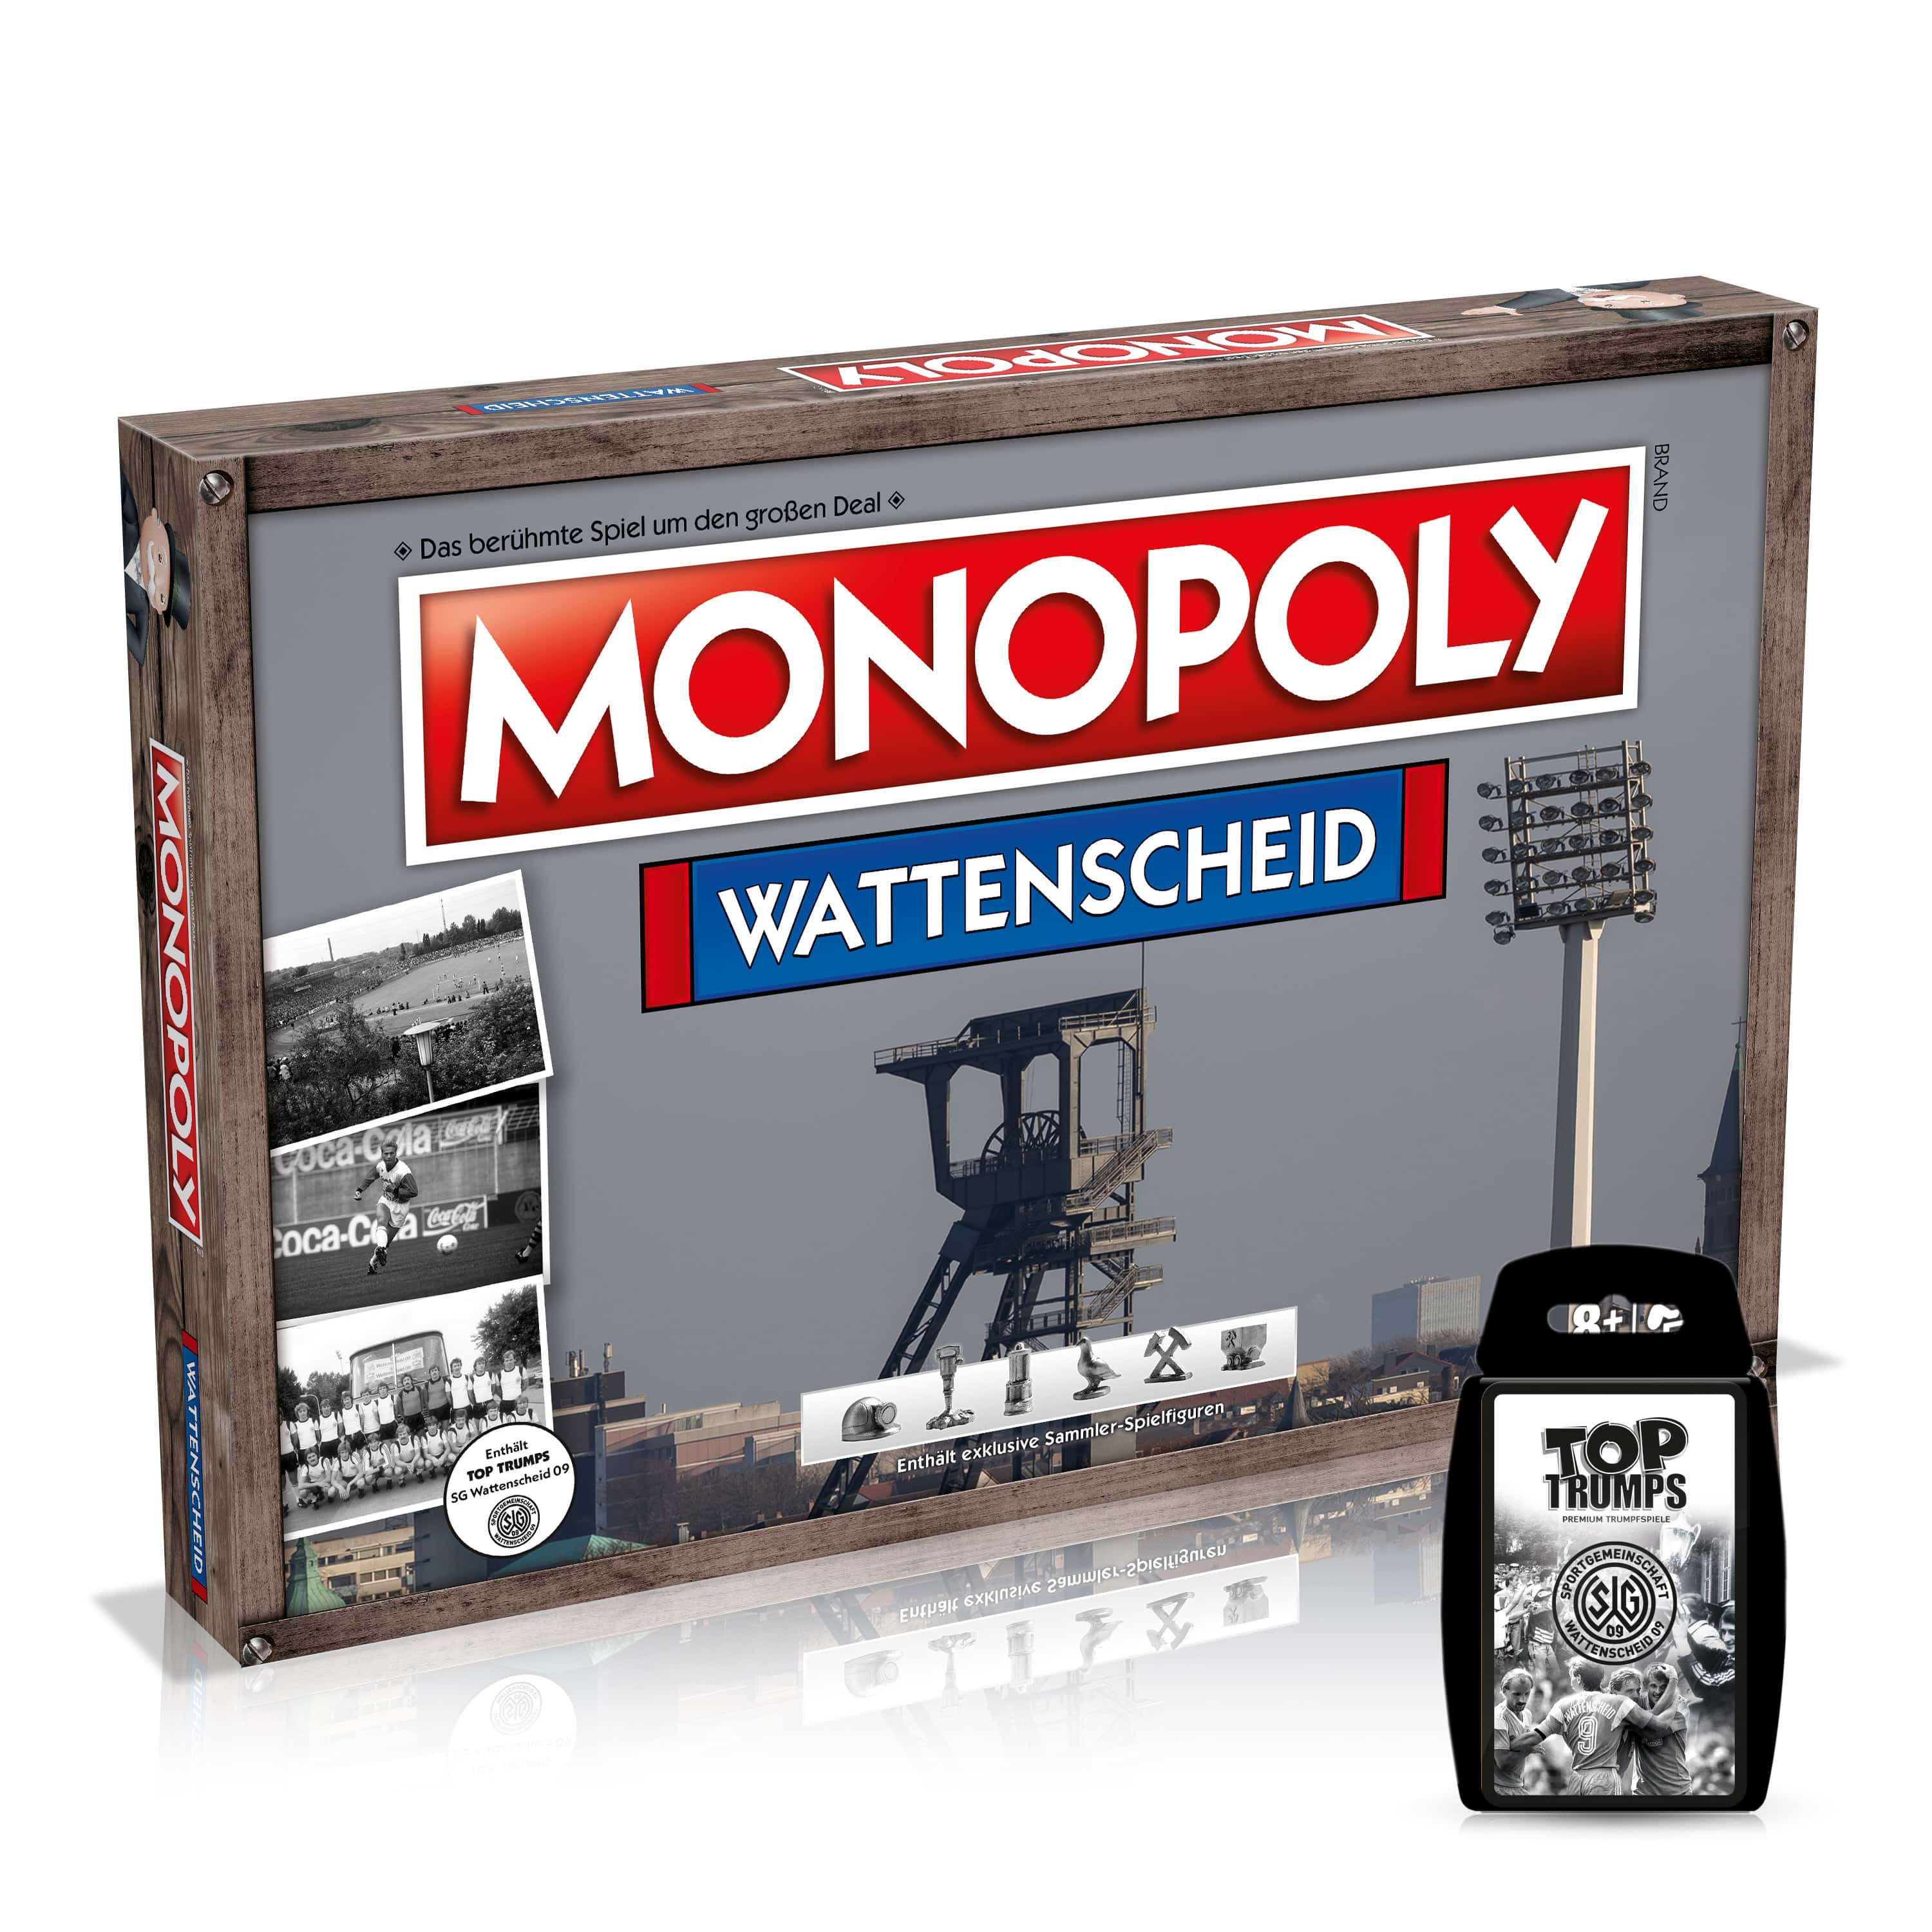 Monopoly Städteedition - Wattenscheid inkl. Top Trumps